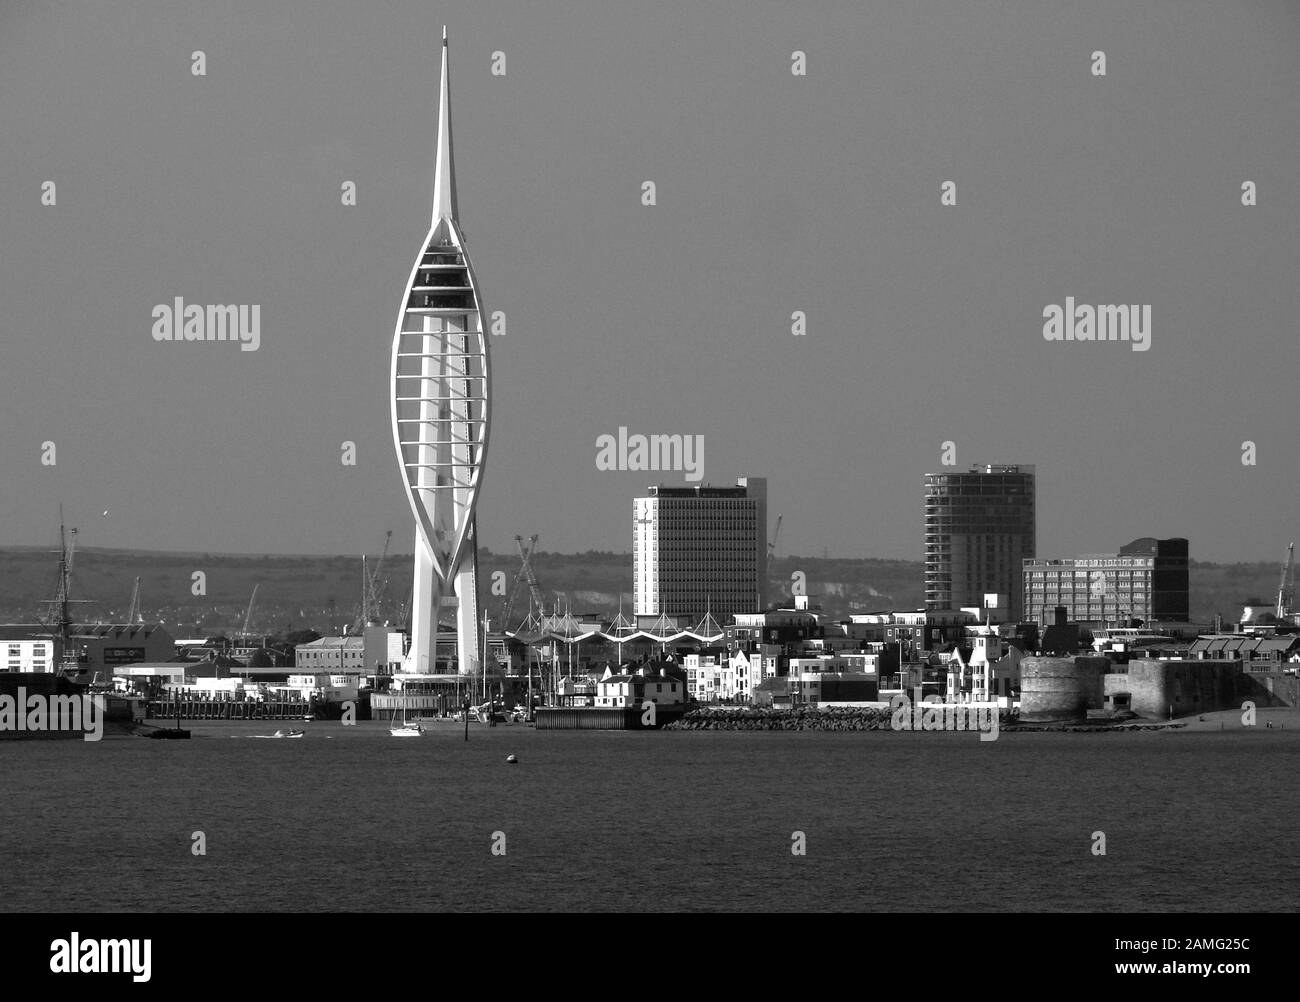 La tour Spinnaker se trouve au-dessus du port de Portsmouth, dans le Hampshire, en Angleterre. Banque D'Images